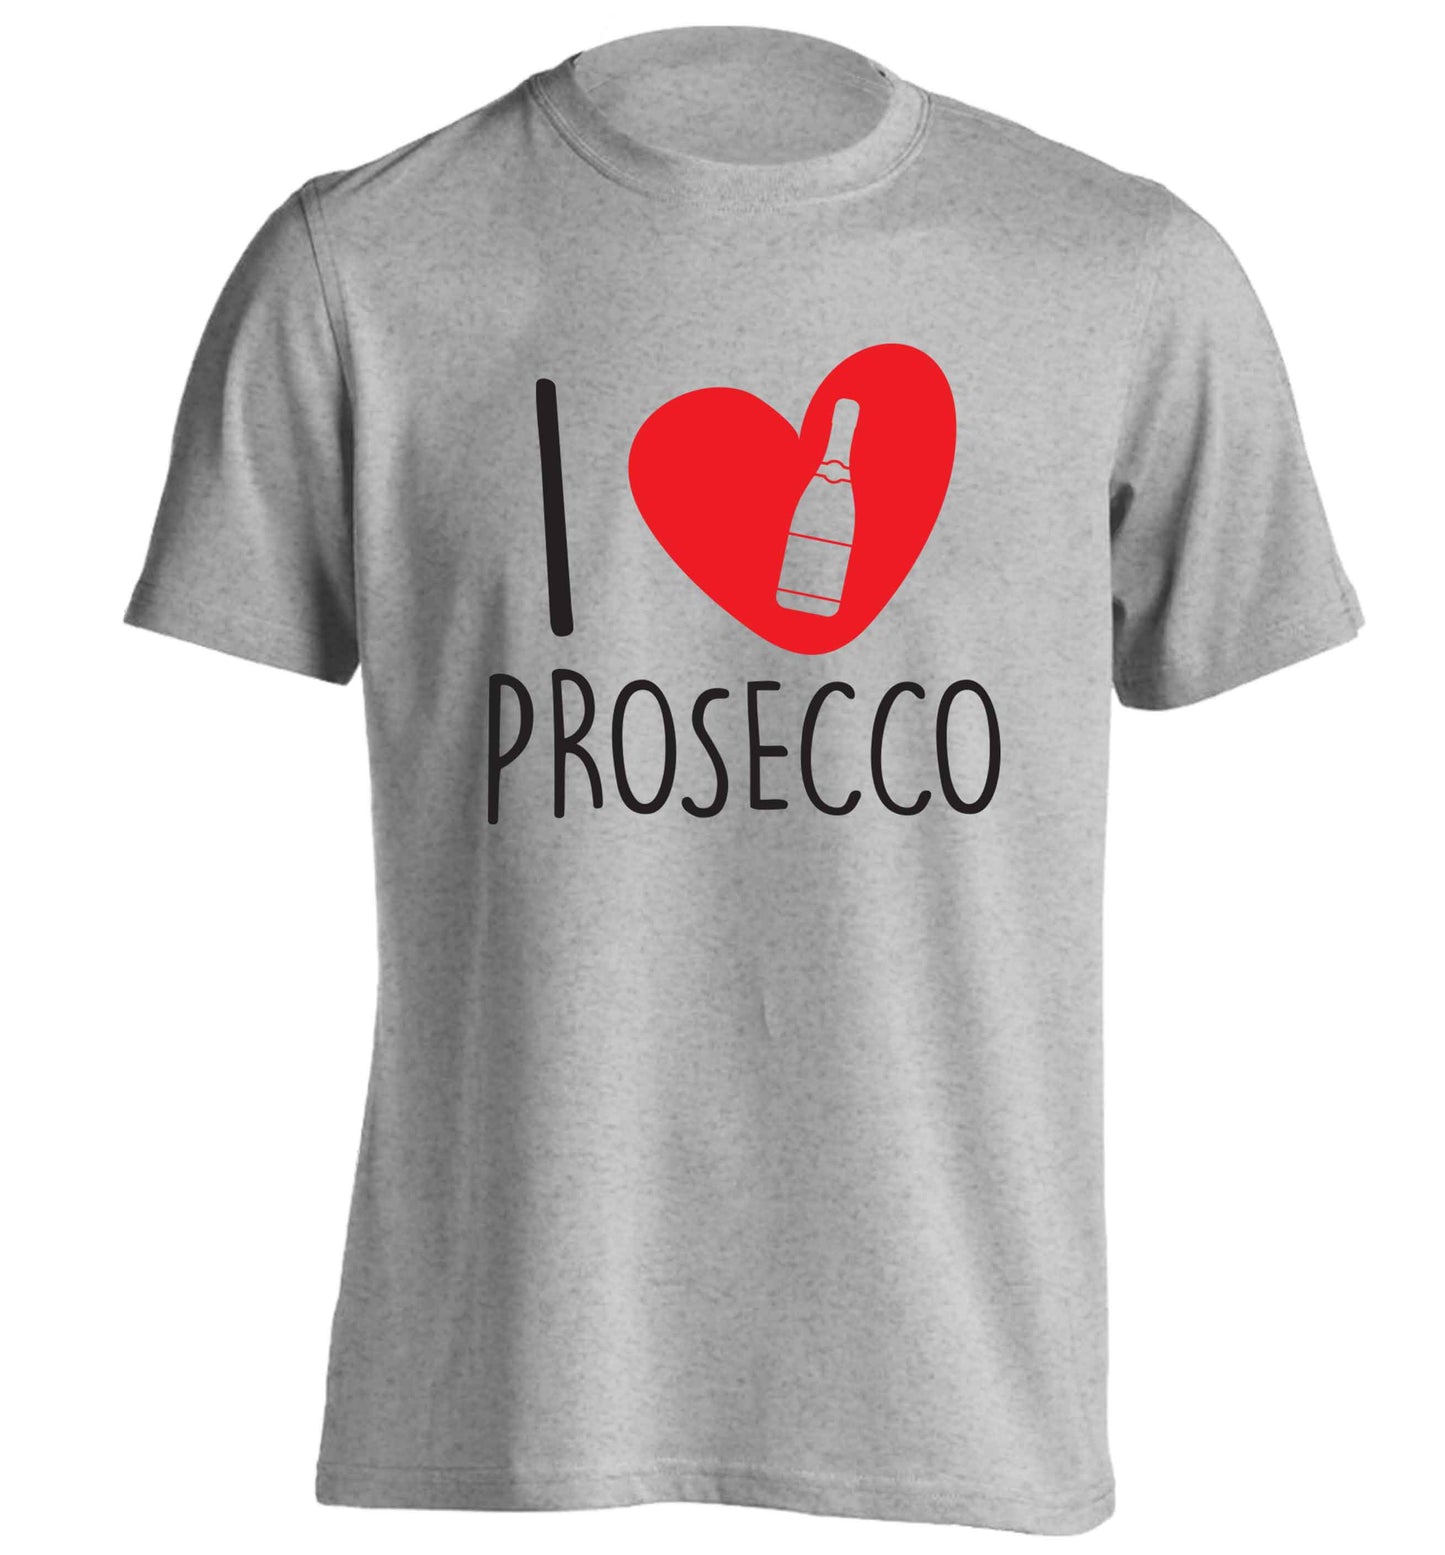 I love prosecco adults unisex grey Tshirt 2XL